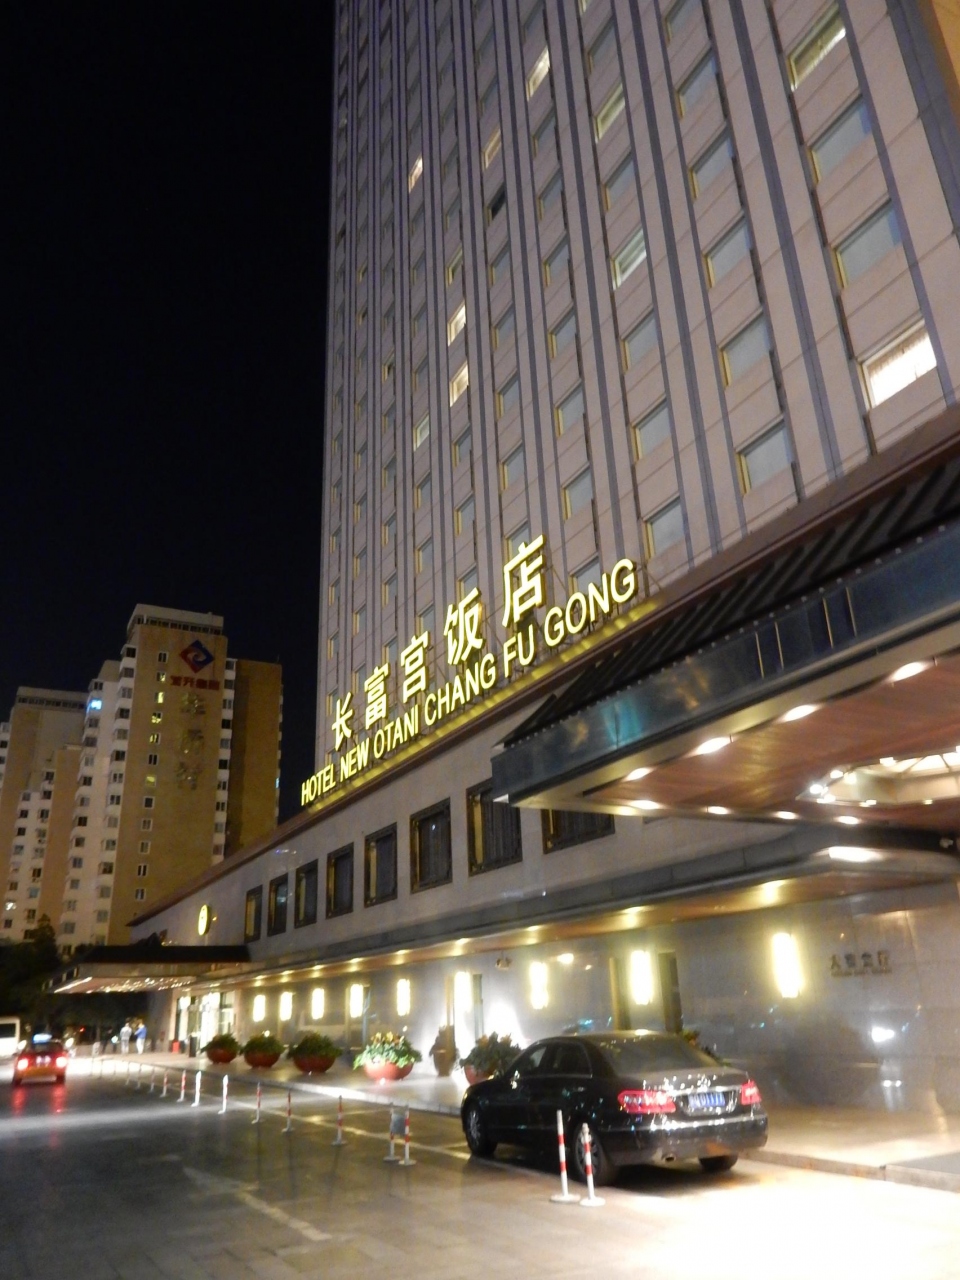 北京 ホテル ホテルニューオータニ長富宮 長富宮飯店 Hotel New Otani Chang Fu Gong 北京 中国 の旅行記 ブログ By Jaclhrkiさん フォートラベル